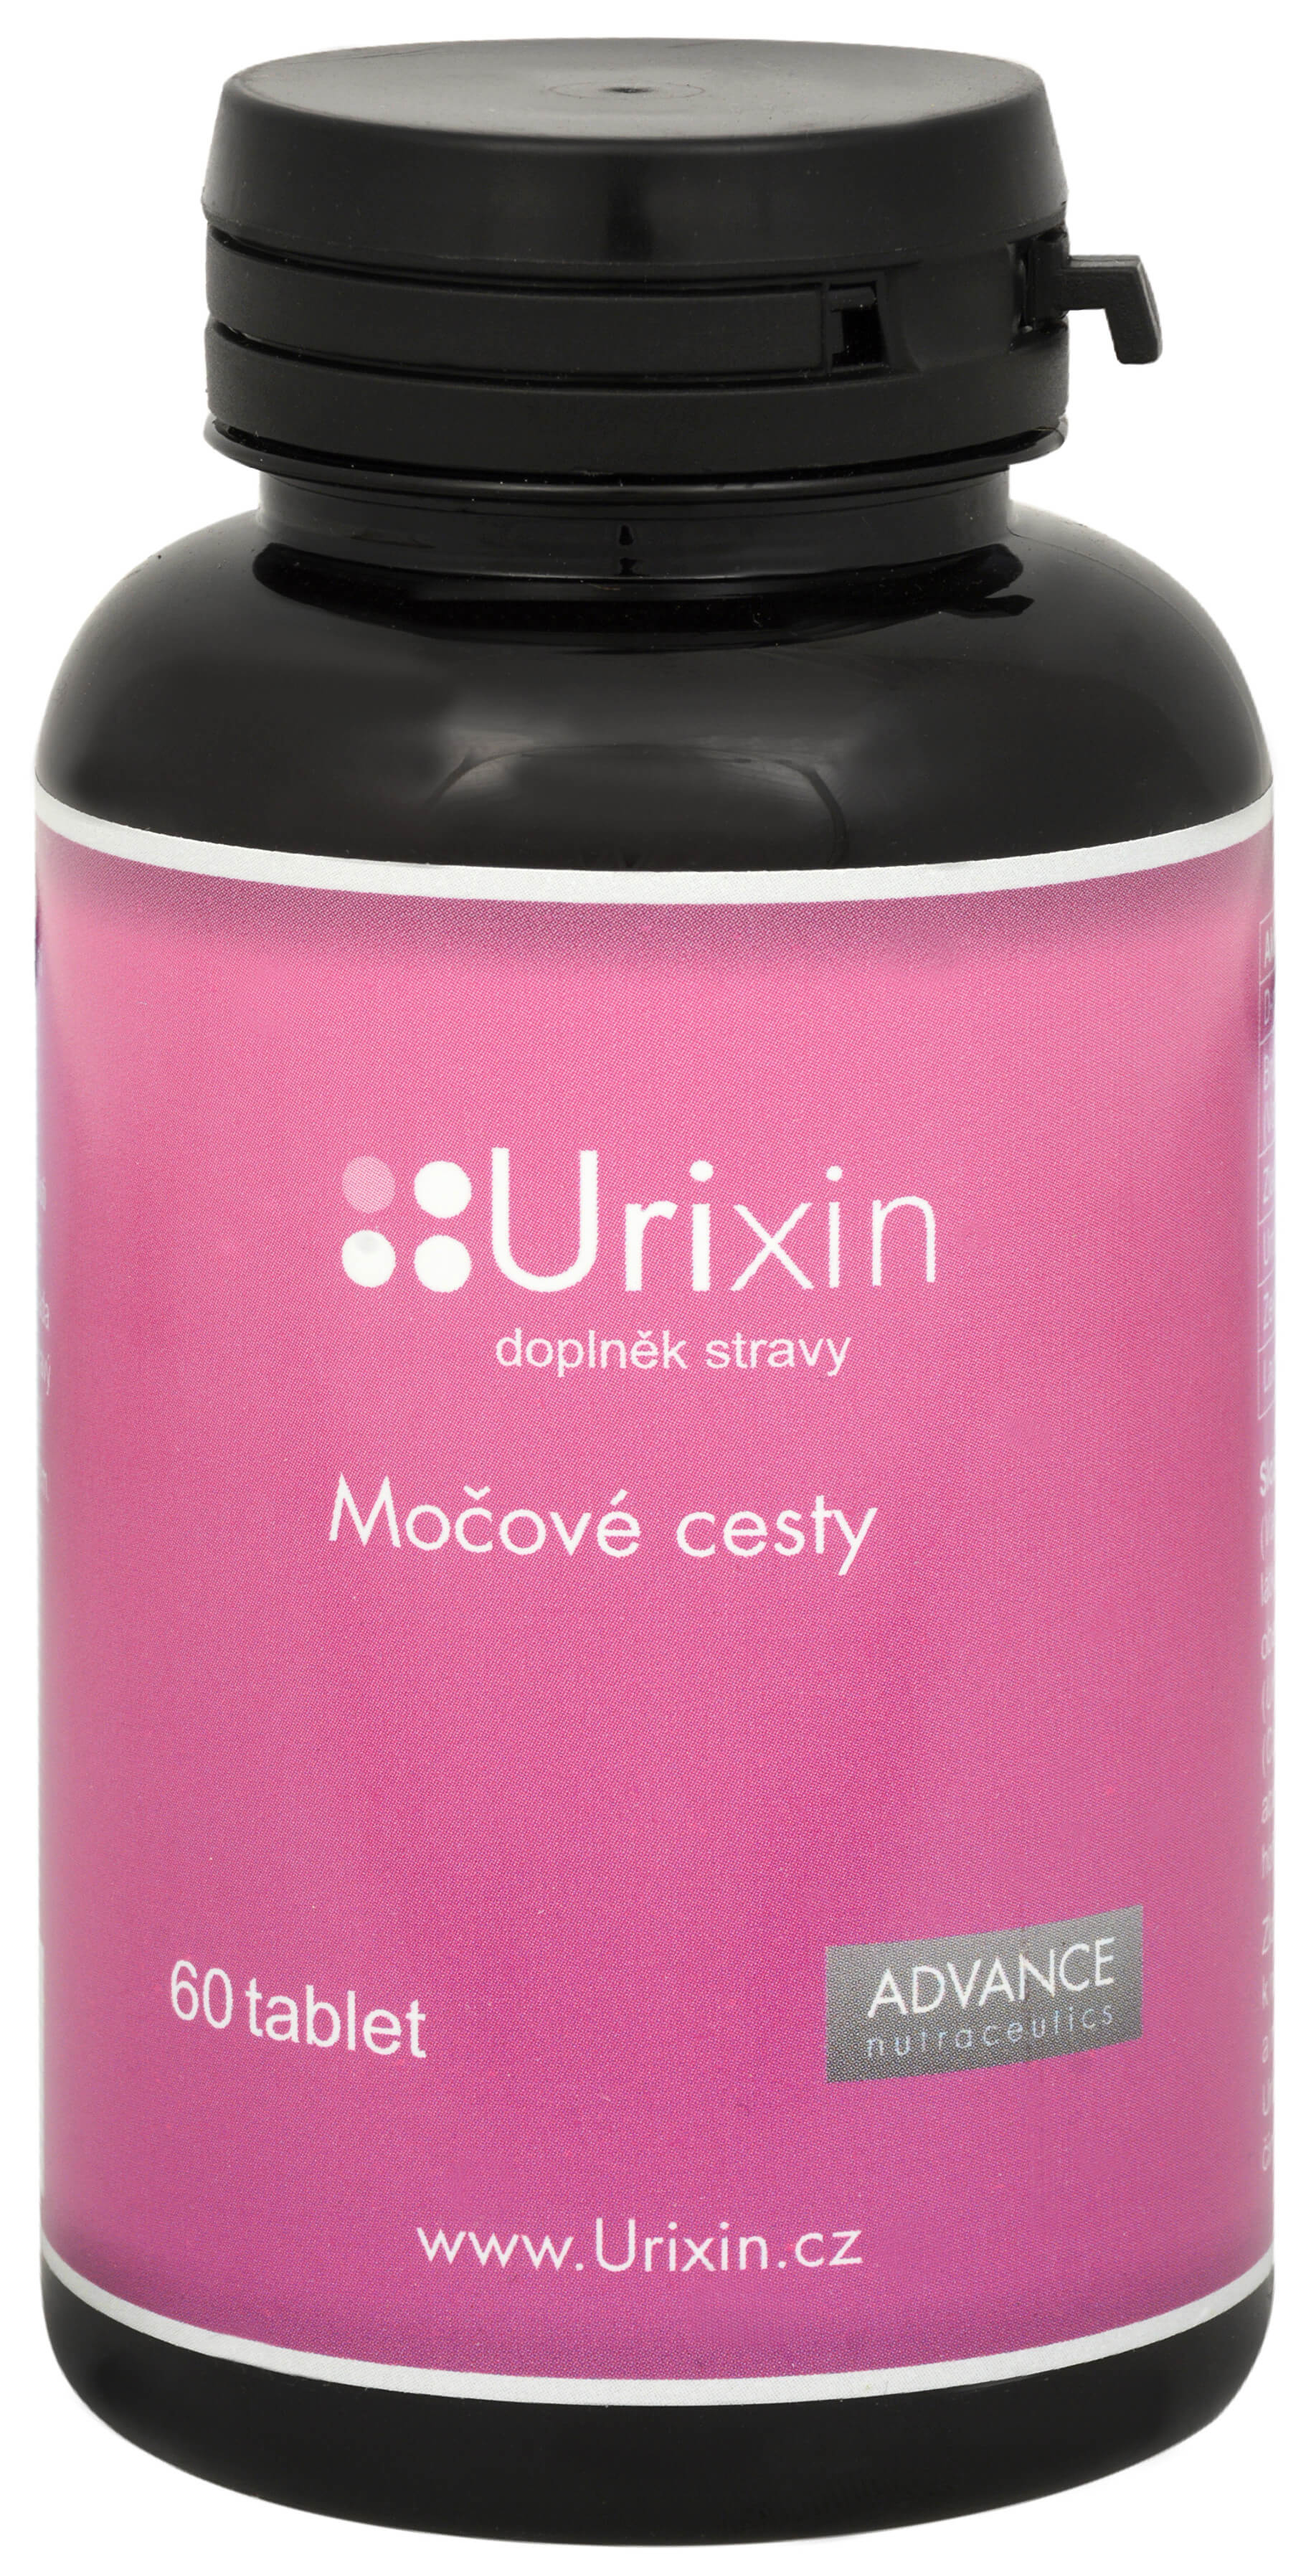 Zobrazit detail výrobku Advance nutraceutics Urixin 60 tbl. + 2 měsíce na vrácení zboží